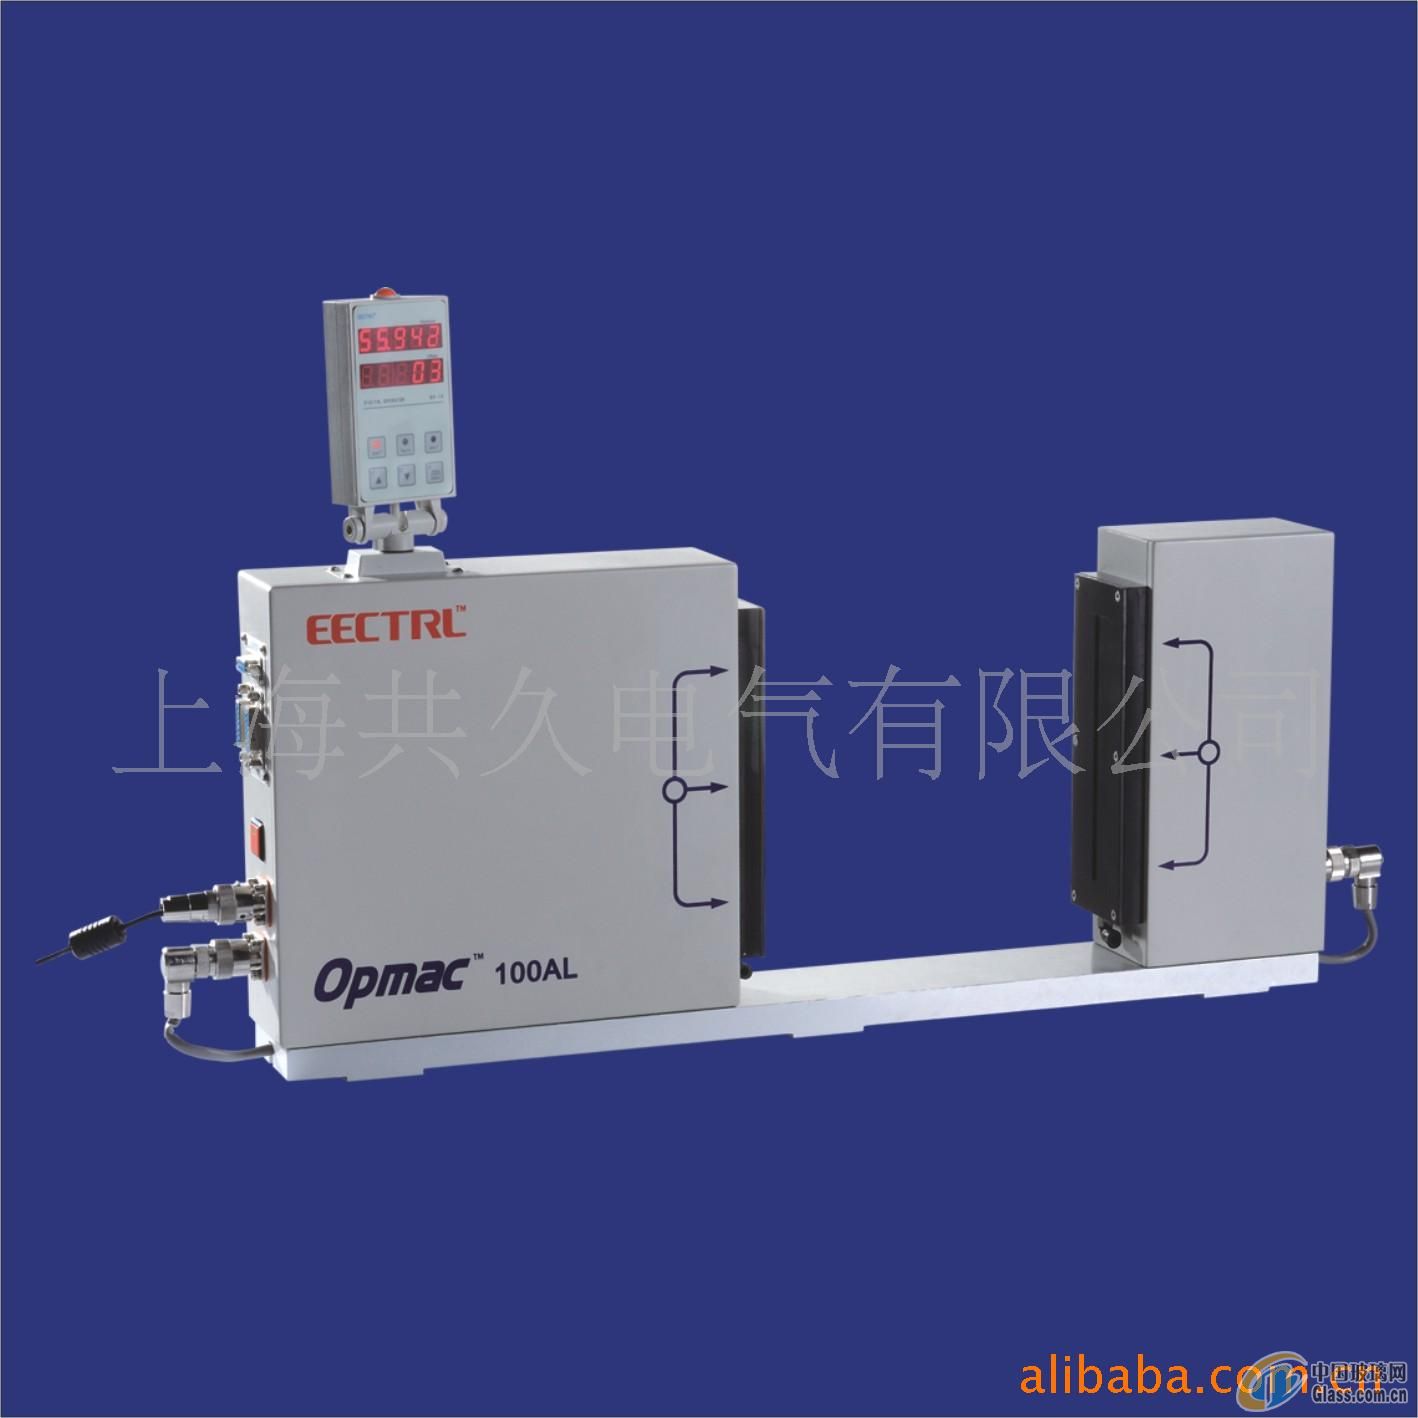 【上海共久电气有限公司】-激光测径仪,激光分